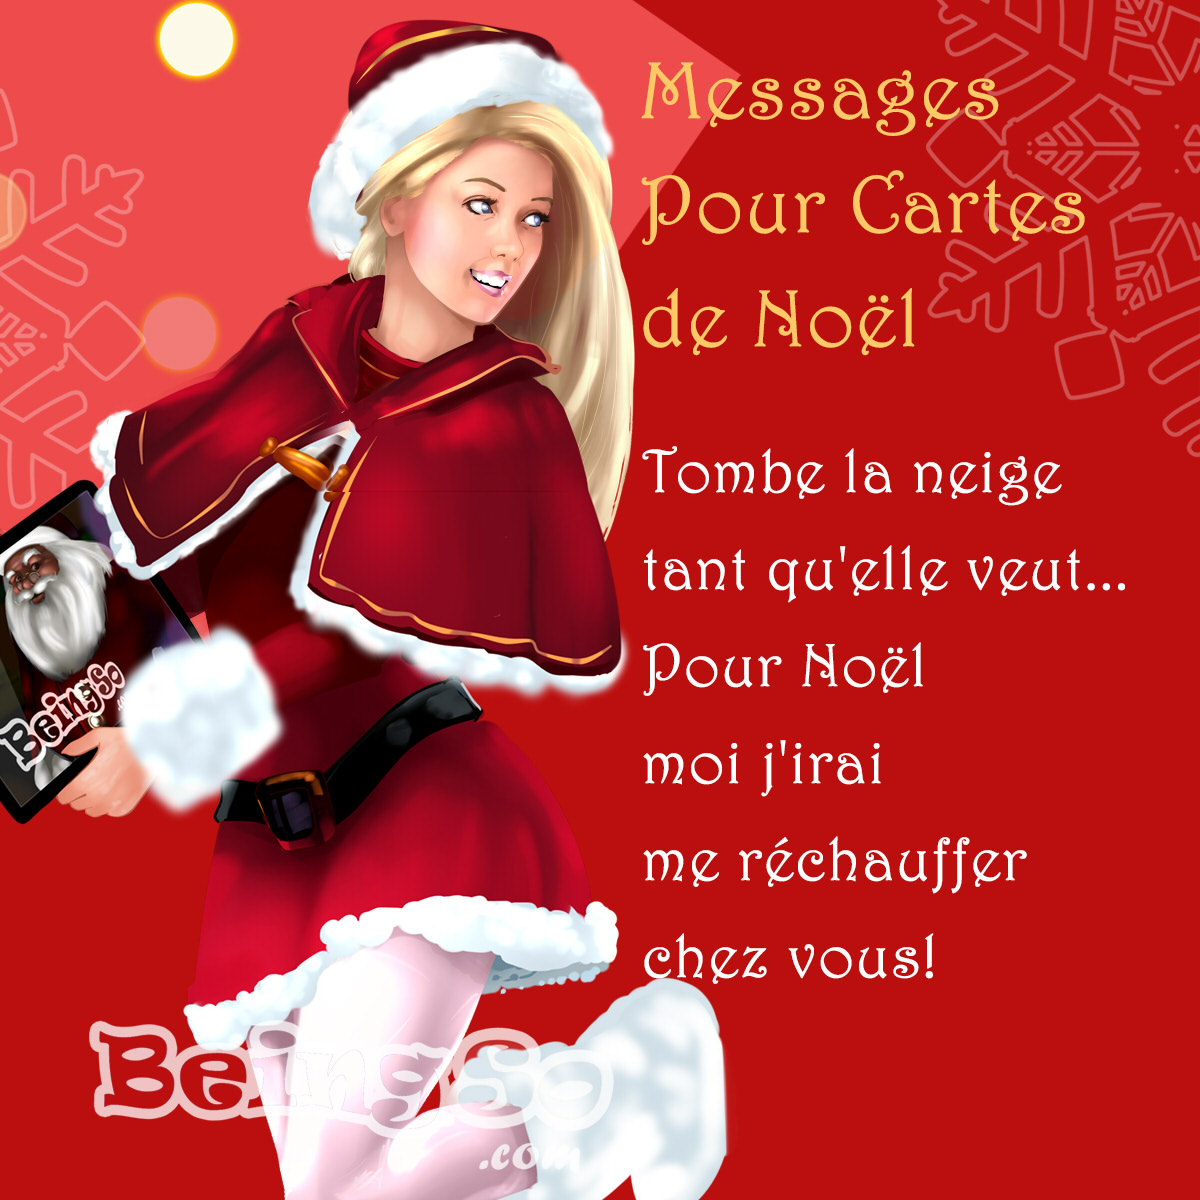 50 Messages Originaux Pour Vos Cartes De Noel Beingso